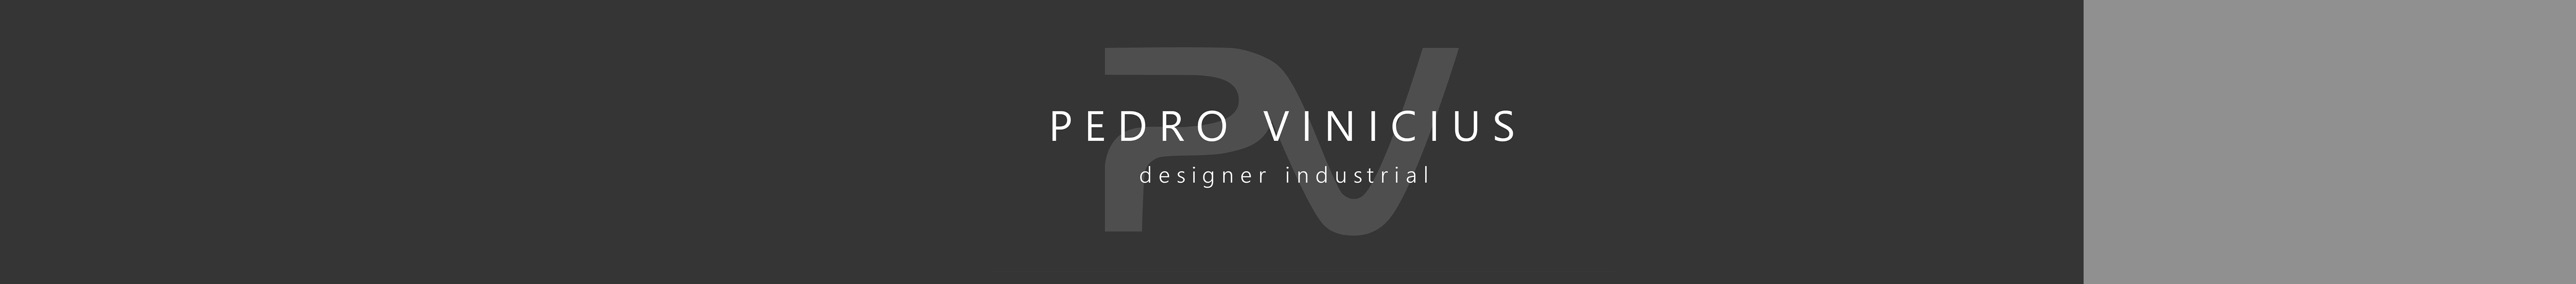 Pedro Vinicius's profile banner